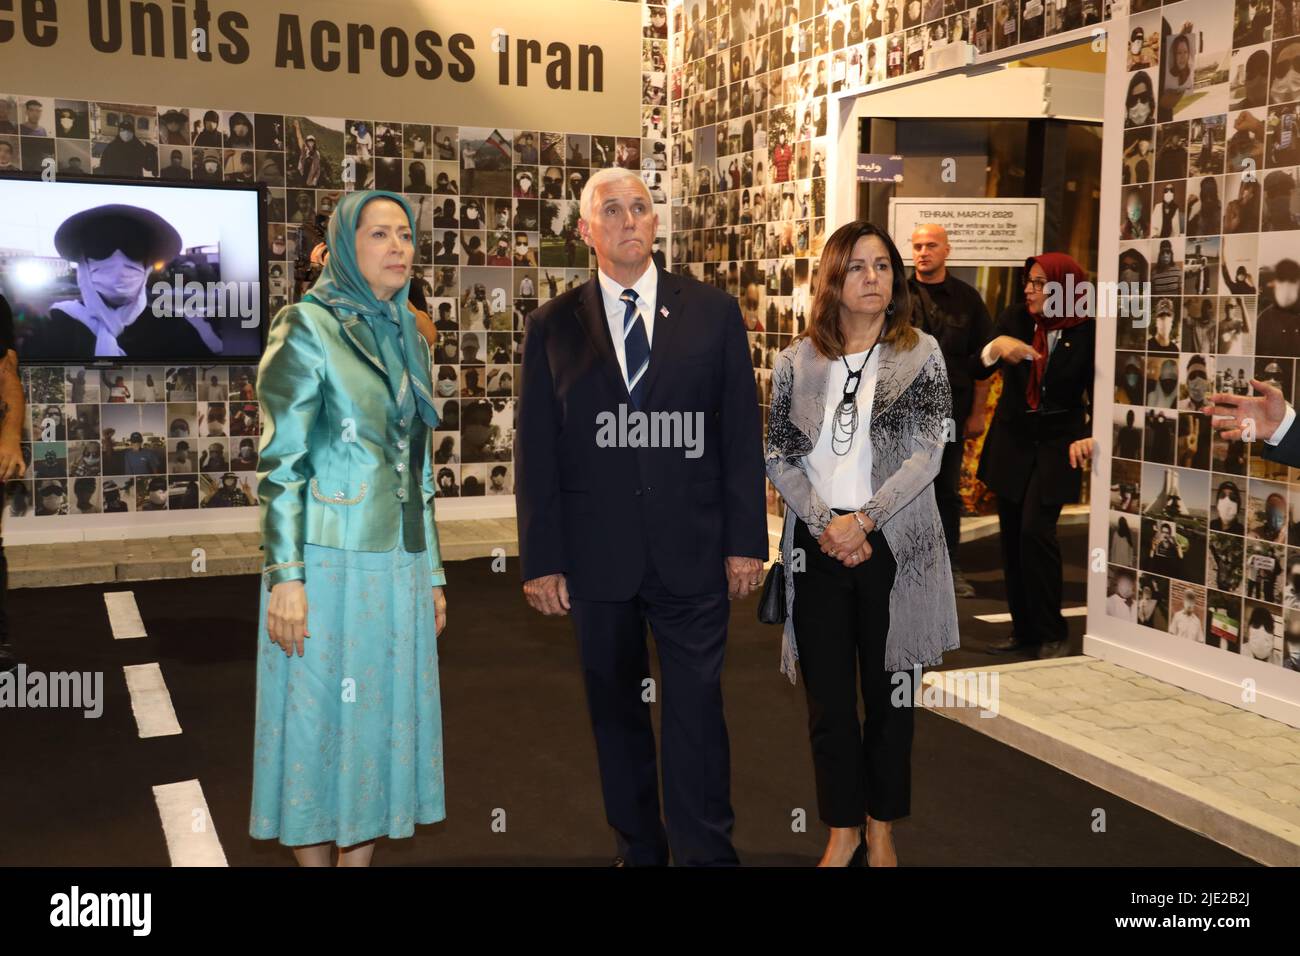 Président élu du Conseil national de la résistance de l'Iran (NCRI) Maryam Rajavi, vice-président Mike Pence et Karen Pence visitent l'exposition de la résistance, à Ashraf en 3, qui abrite des milliers de membres du principal mouvement d'opposition iranien, les Mujahedin-e Khalq (PMOI/MEK), Maryam Rajavi montre à Mike Pence les photos des victimes du massacre de l'Iran et a échangé des vues sur les conditions objectives de la société iranienne, l'alternative NCRI et l'approche de la communauté internationale face au fascisme religieux qui gouverne l'Iran. Banque D'Images